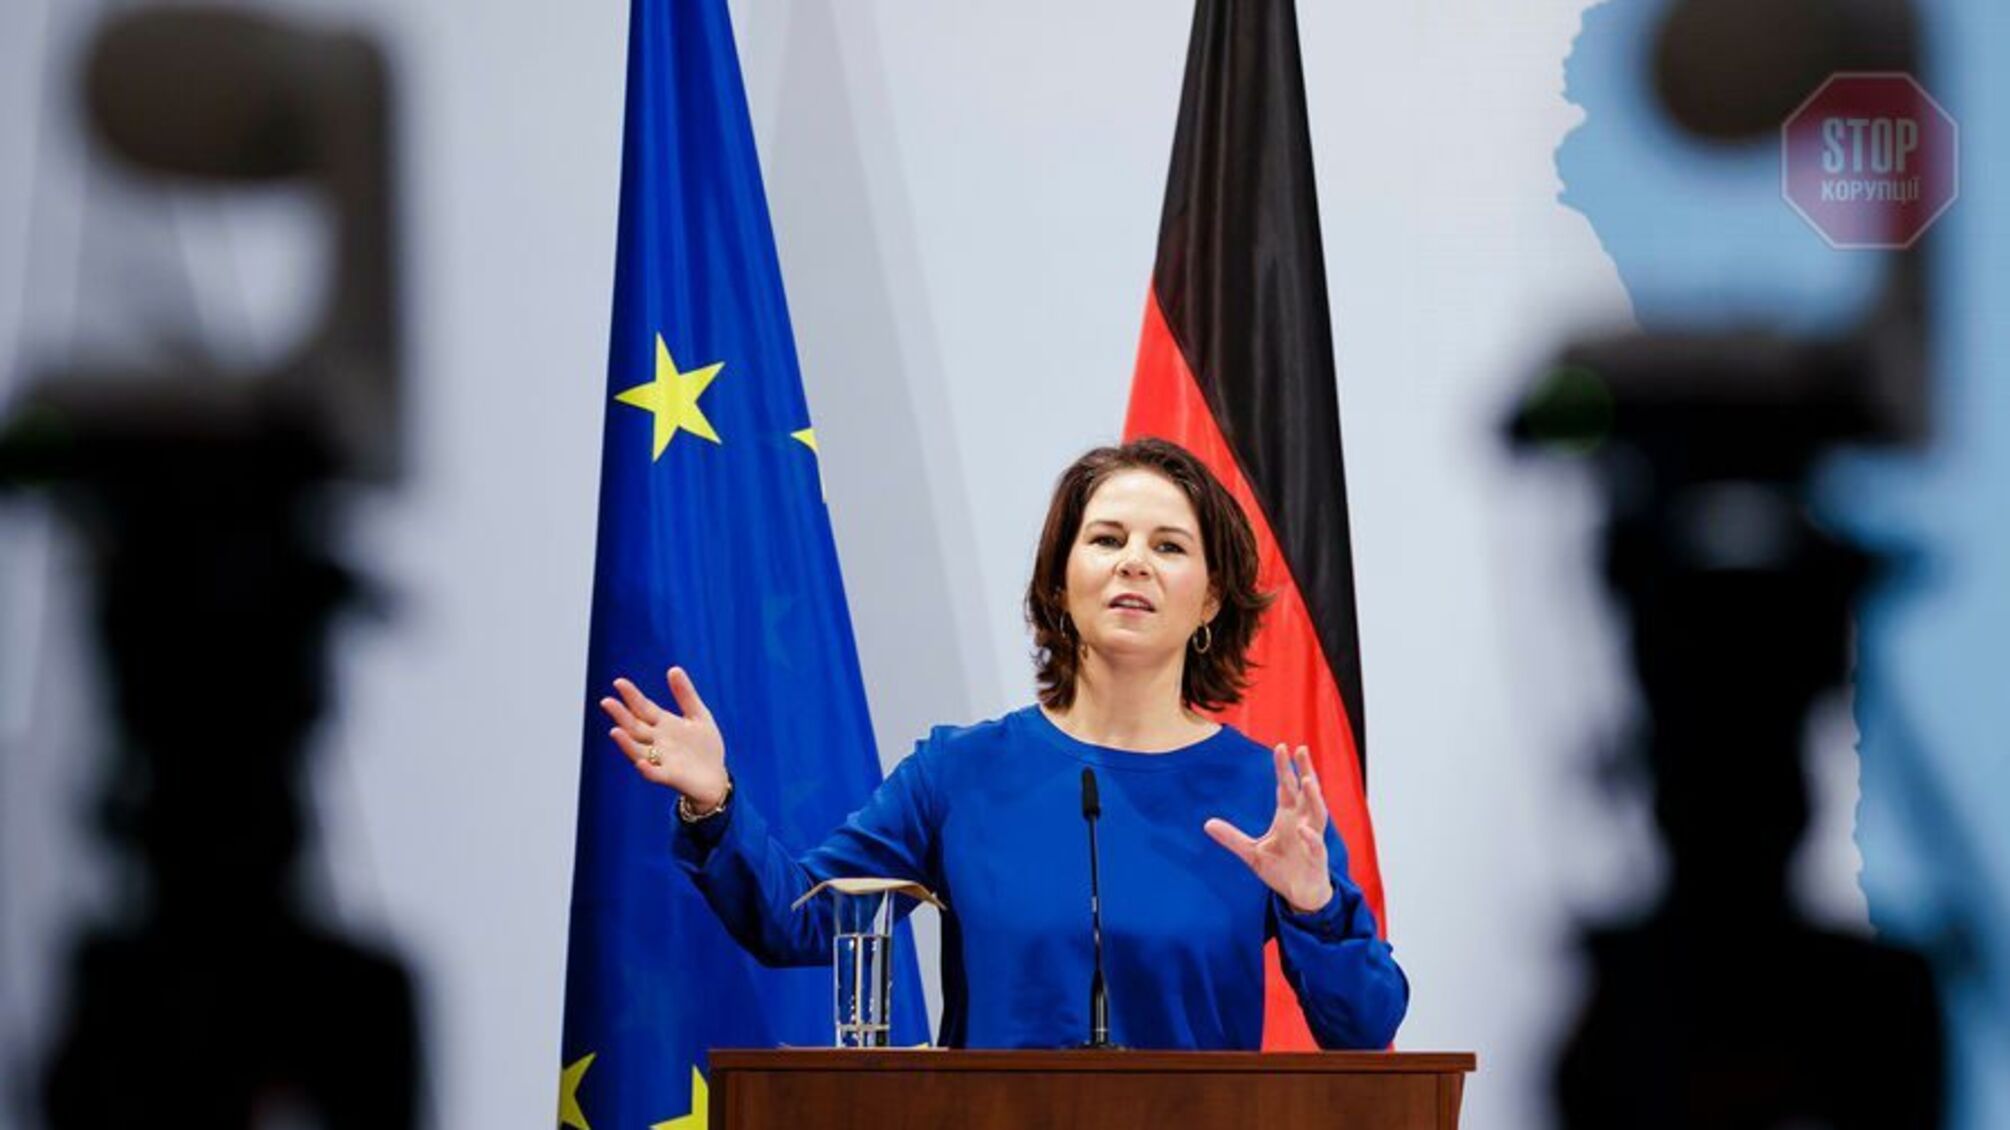 Наступного тижня голова МЗС Німеччини відвідає Україну